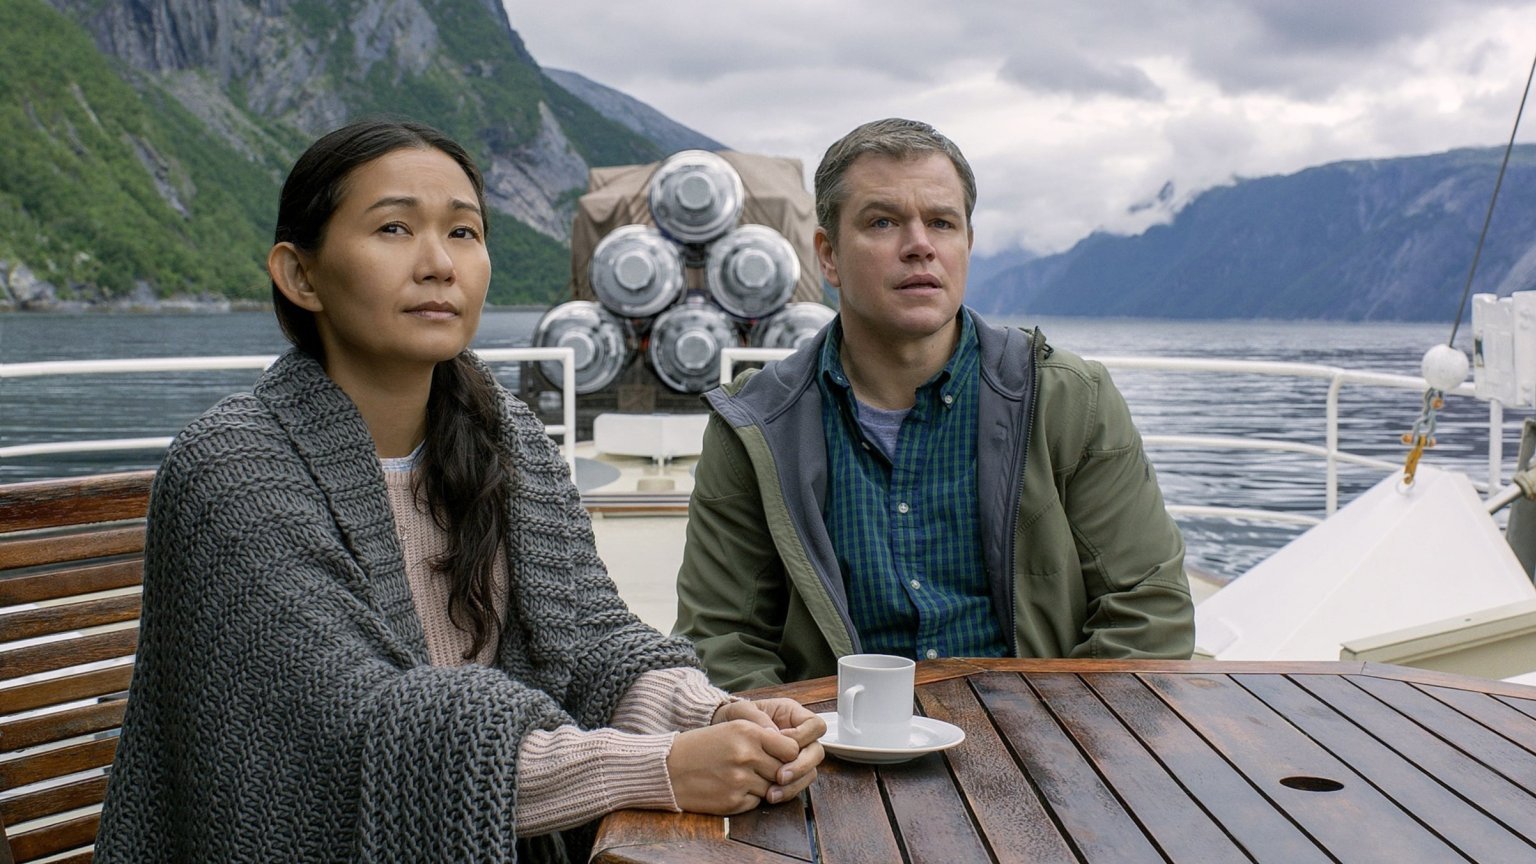 Komische sciencefictionfilm met Matt Damon schiet de top 10 hoog binnen op Netflix